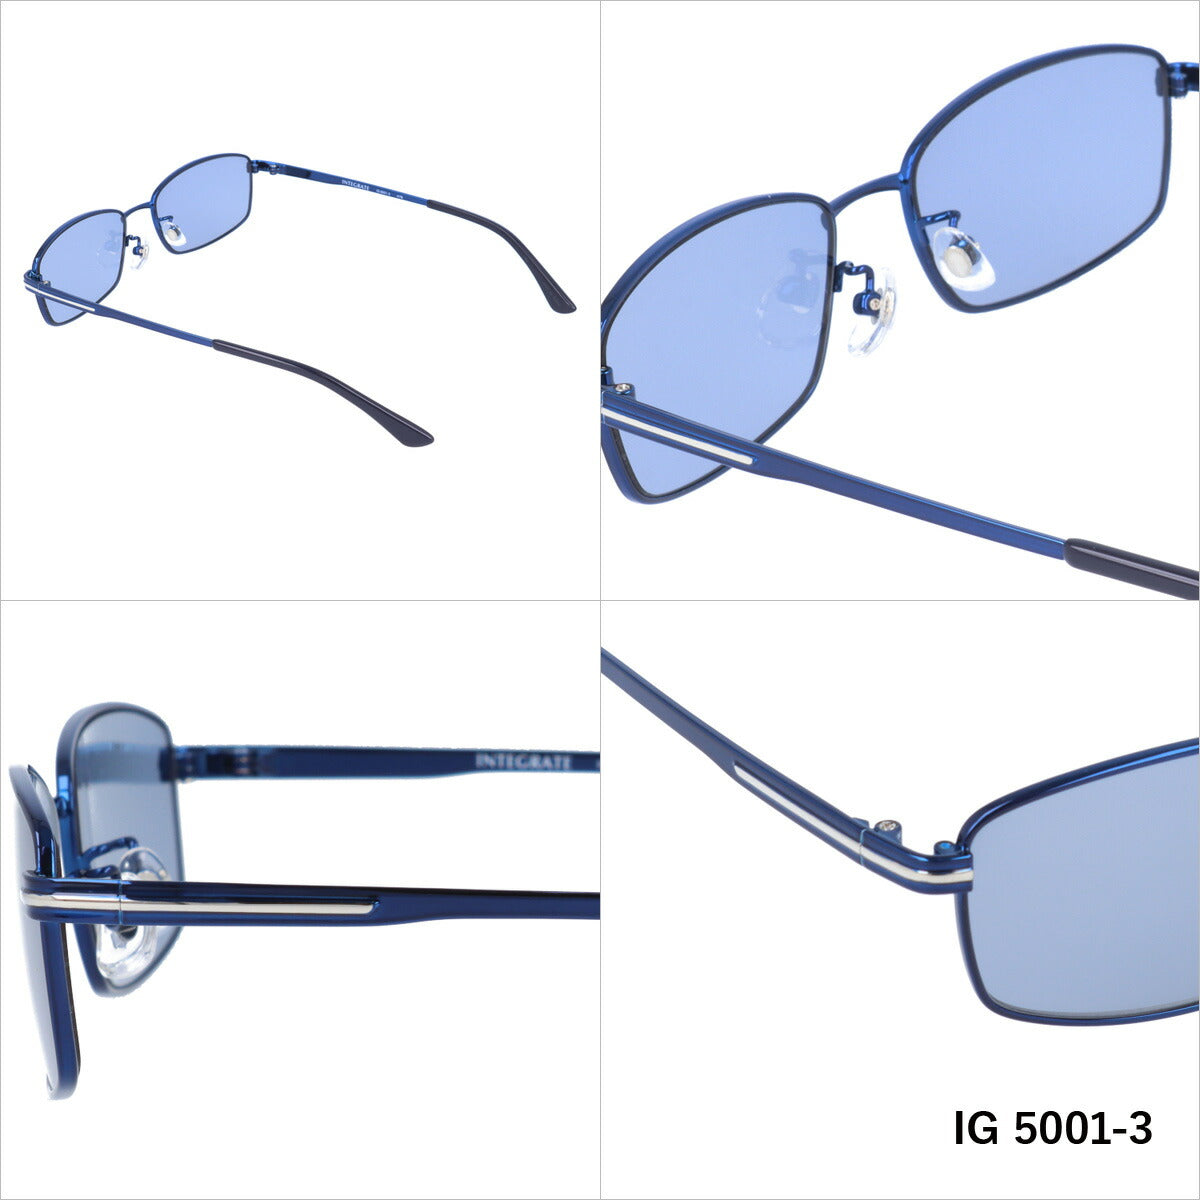 おしゃれ サングラス INTEGRATE インテグレート IG 5001 全3色 57サイズ アジアンフィット スクエア型 メンズ レディース UVカット 紫外線 対策 ブランド 眼鏡 メガネ アイウェア 人気 おすすめ ラッピング無料